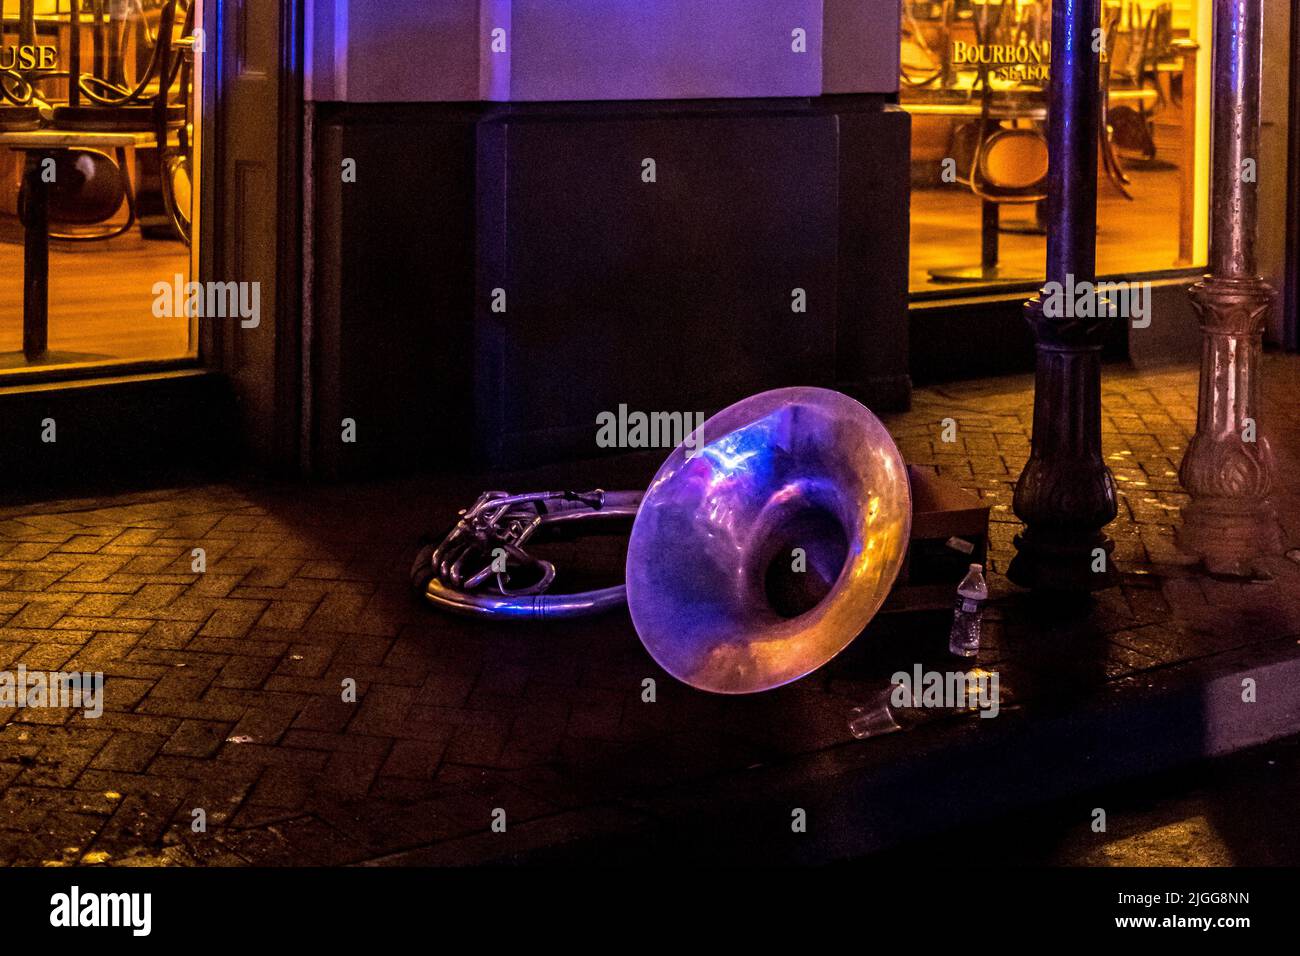 Bourboun Street in New Orleans (Louisiana) bei Nacht, zeigt eine Posaune, die von einem Künstler in der Nähe auf dem Boden gelassen wurde Stockfoto